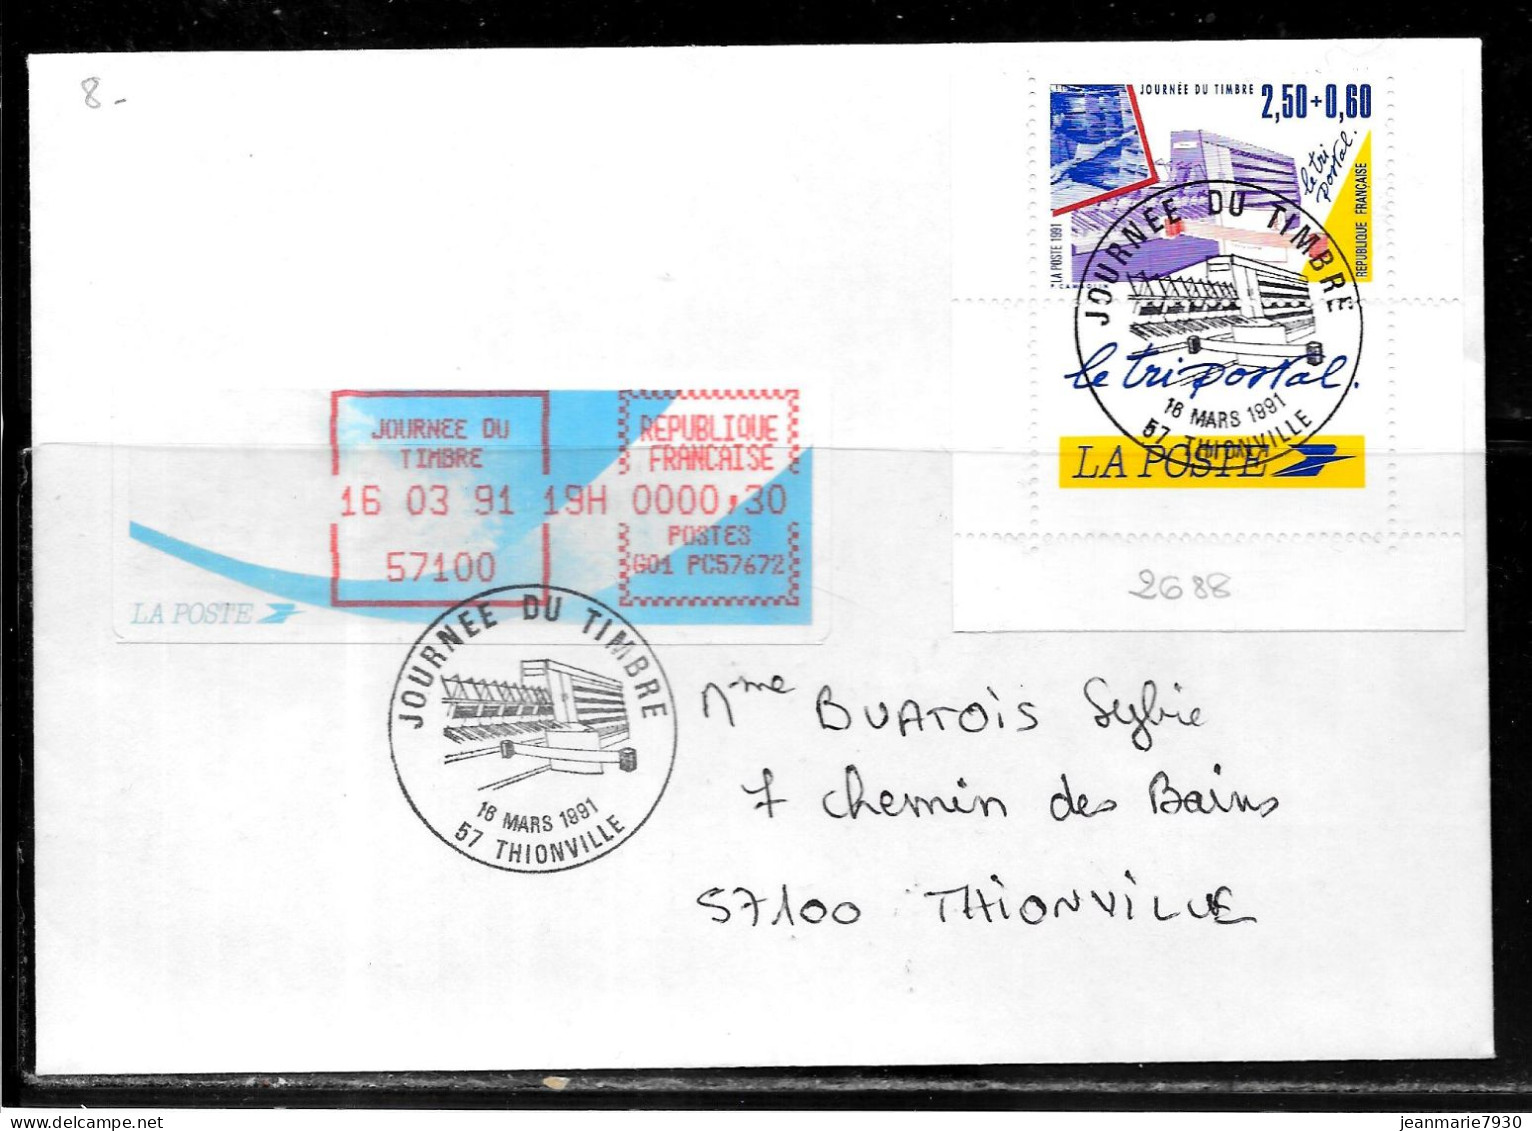 K183 - N° 2688 SUR LETTRE DE THIONVILLE DU 16/03/91 - JOURNEE DU TIMBRE - VIGNETTE D'AFFRANCHISSEMENT - Gedenkstempel